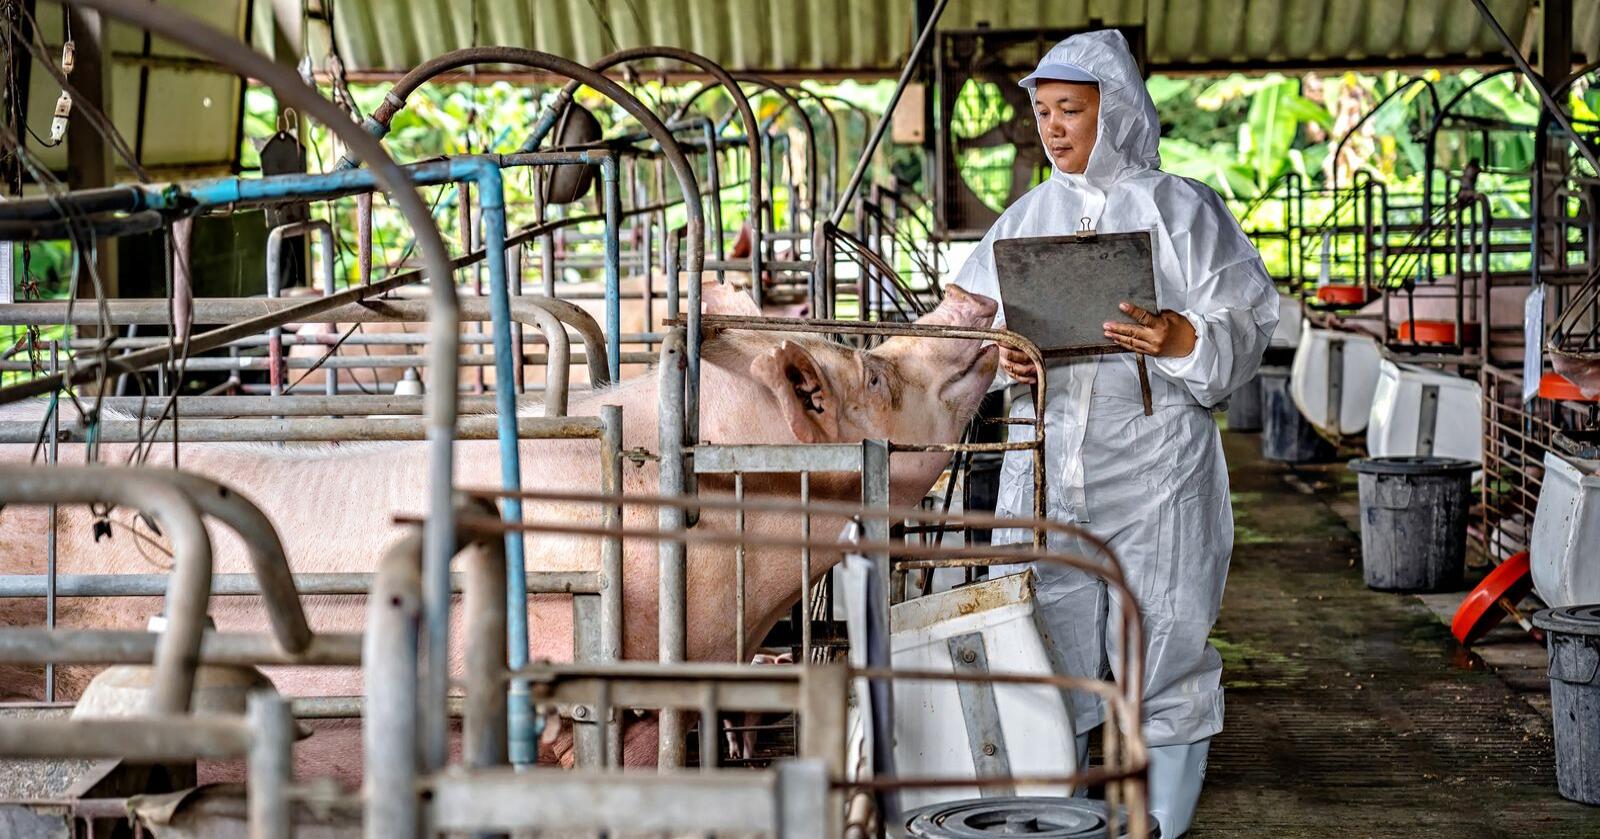 Kinesisk svineproduksjon: I disse dager sluttføres det som skal være Kinas største anlegg til svineproduksjon noensinne. På bildet ser vi utførelse av smittevern på en kinesisk svinegård av en litt annen type. Illustrasjonsfoto: Shutterstock